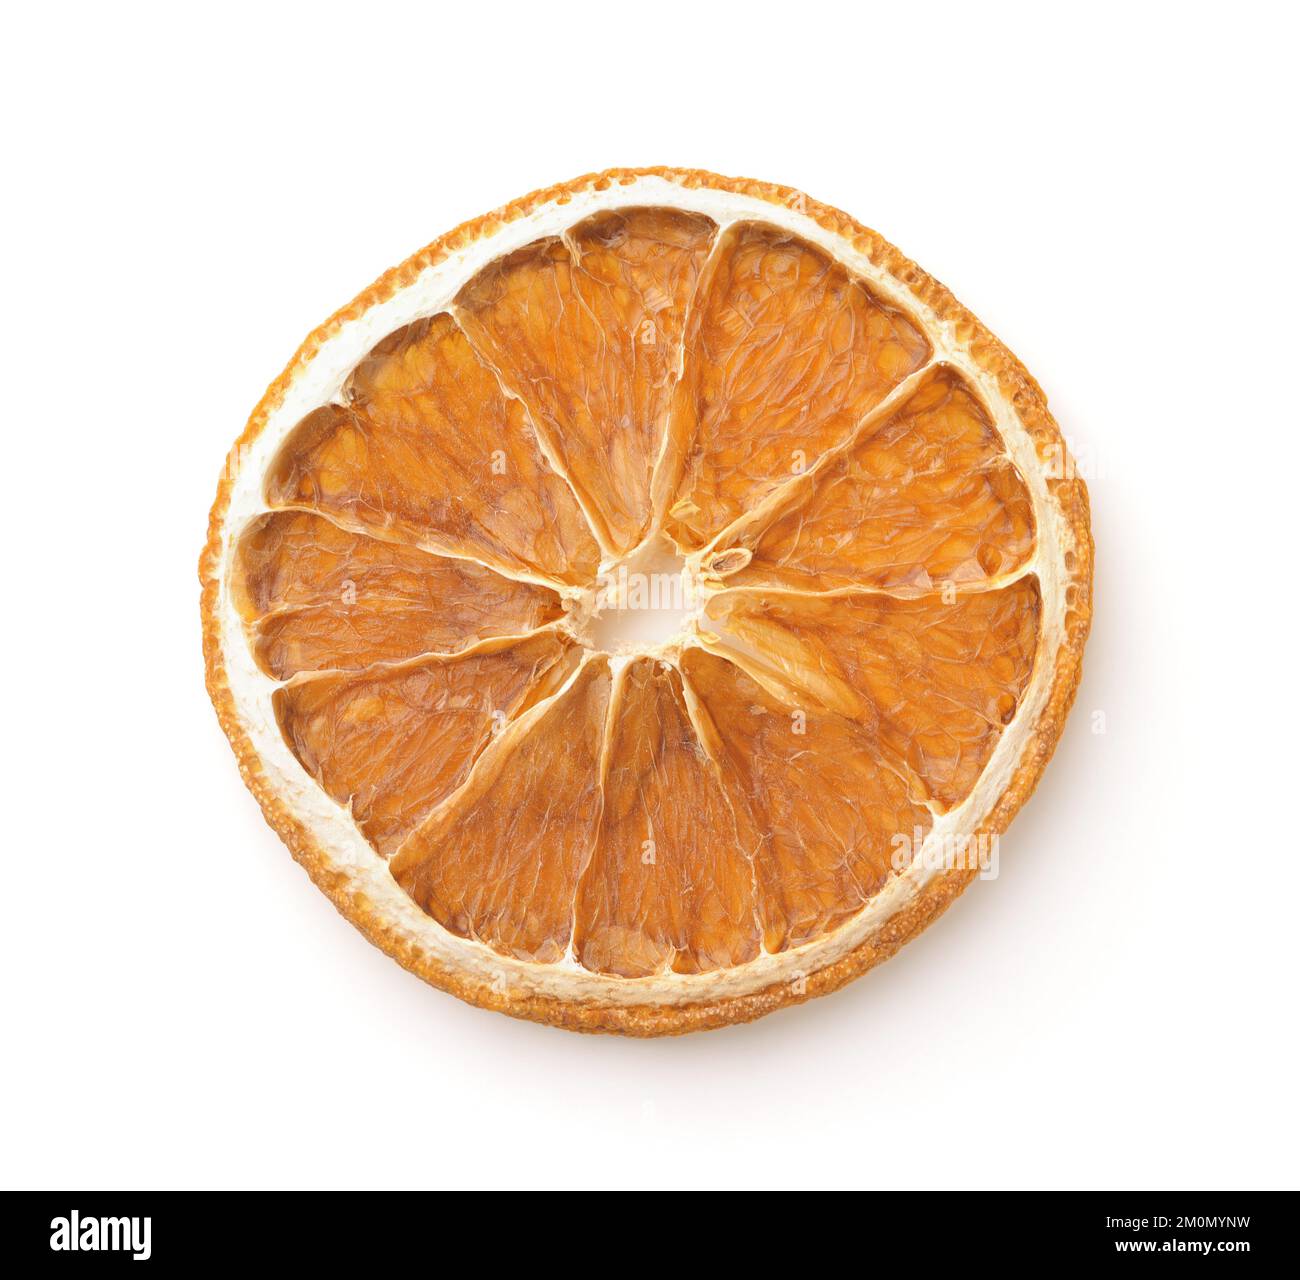 Vue de dessus d'une seule tranche d'orange séchée isolée sur du blanc Banque D'Images